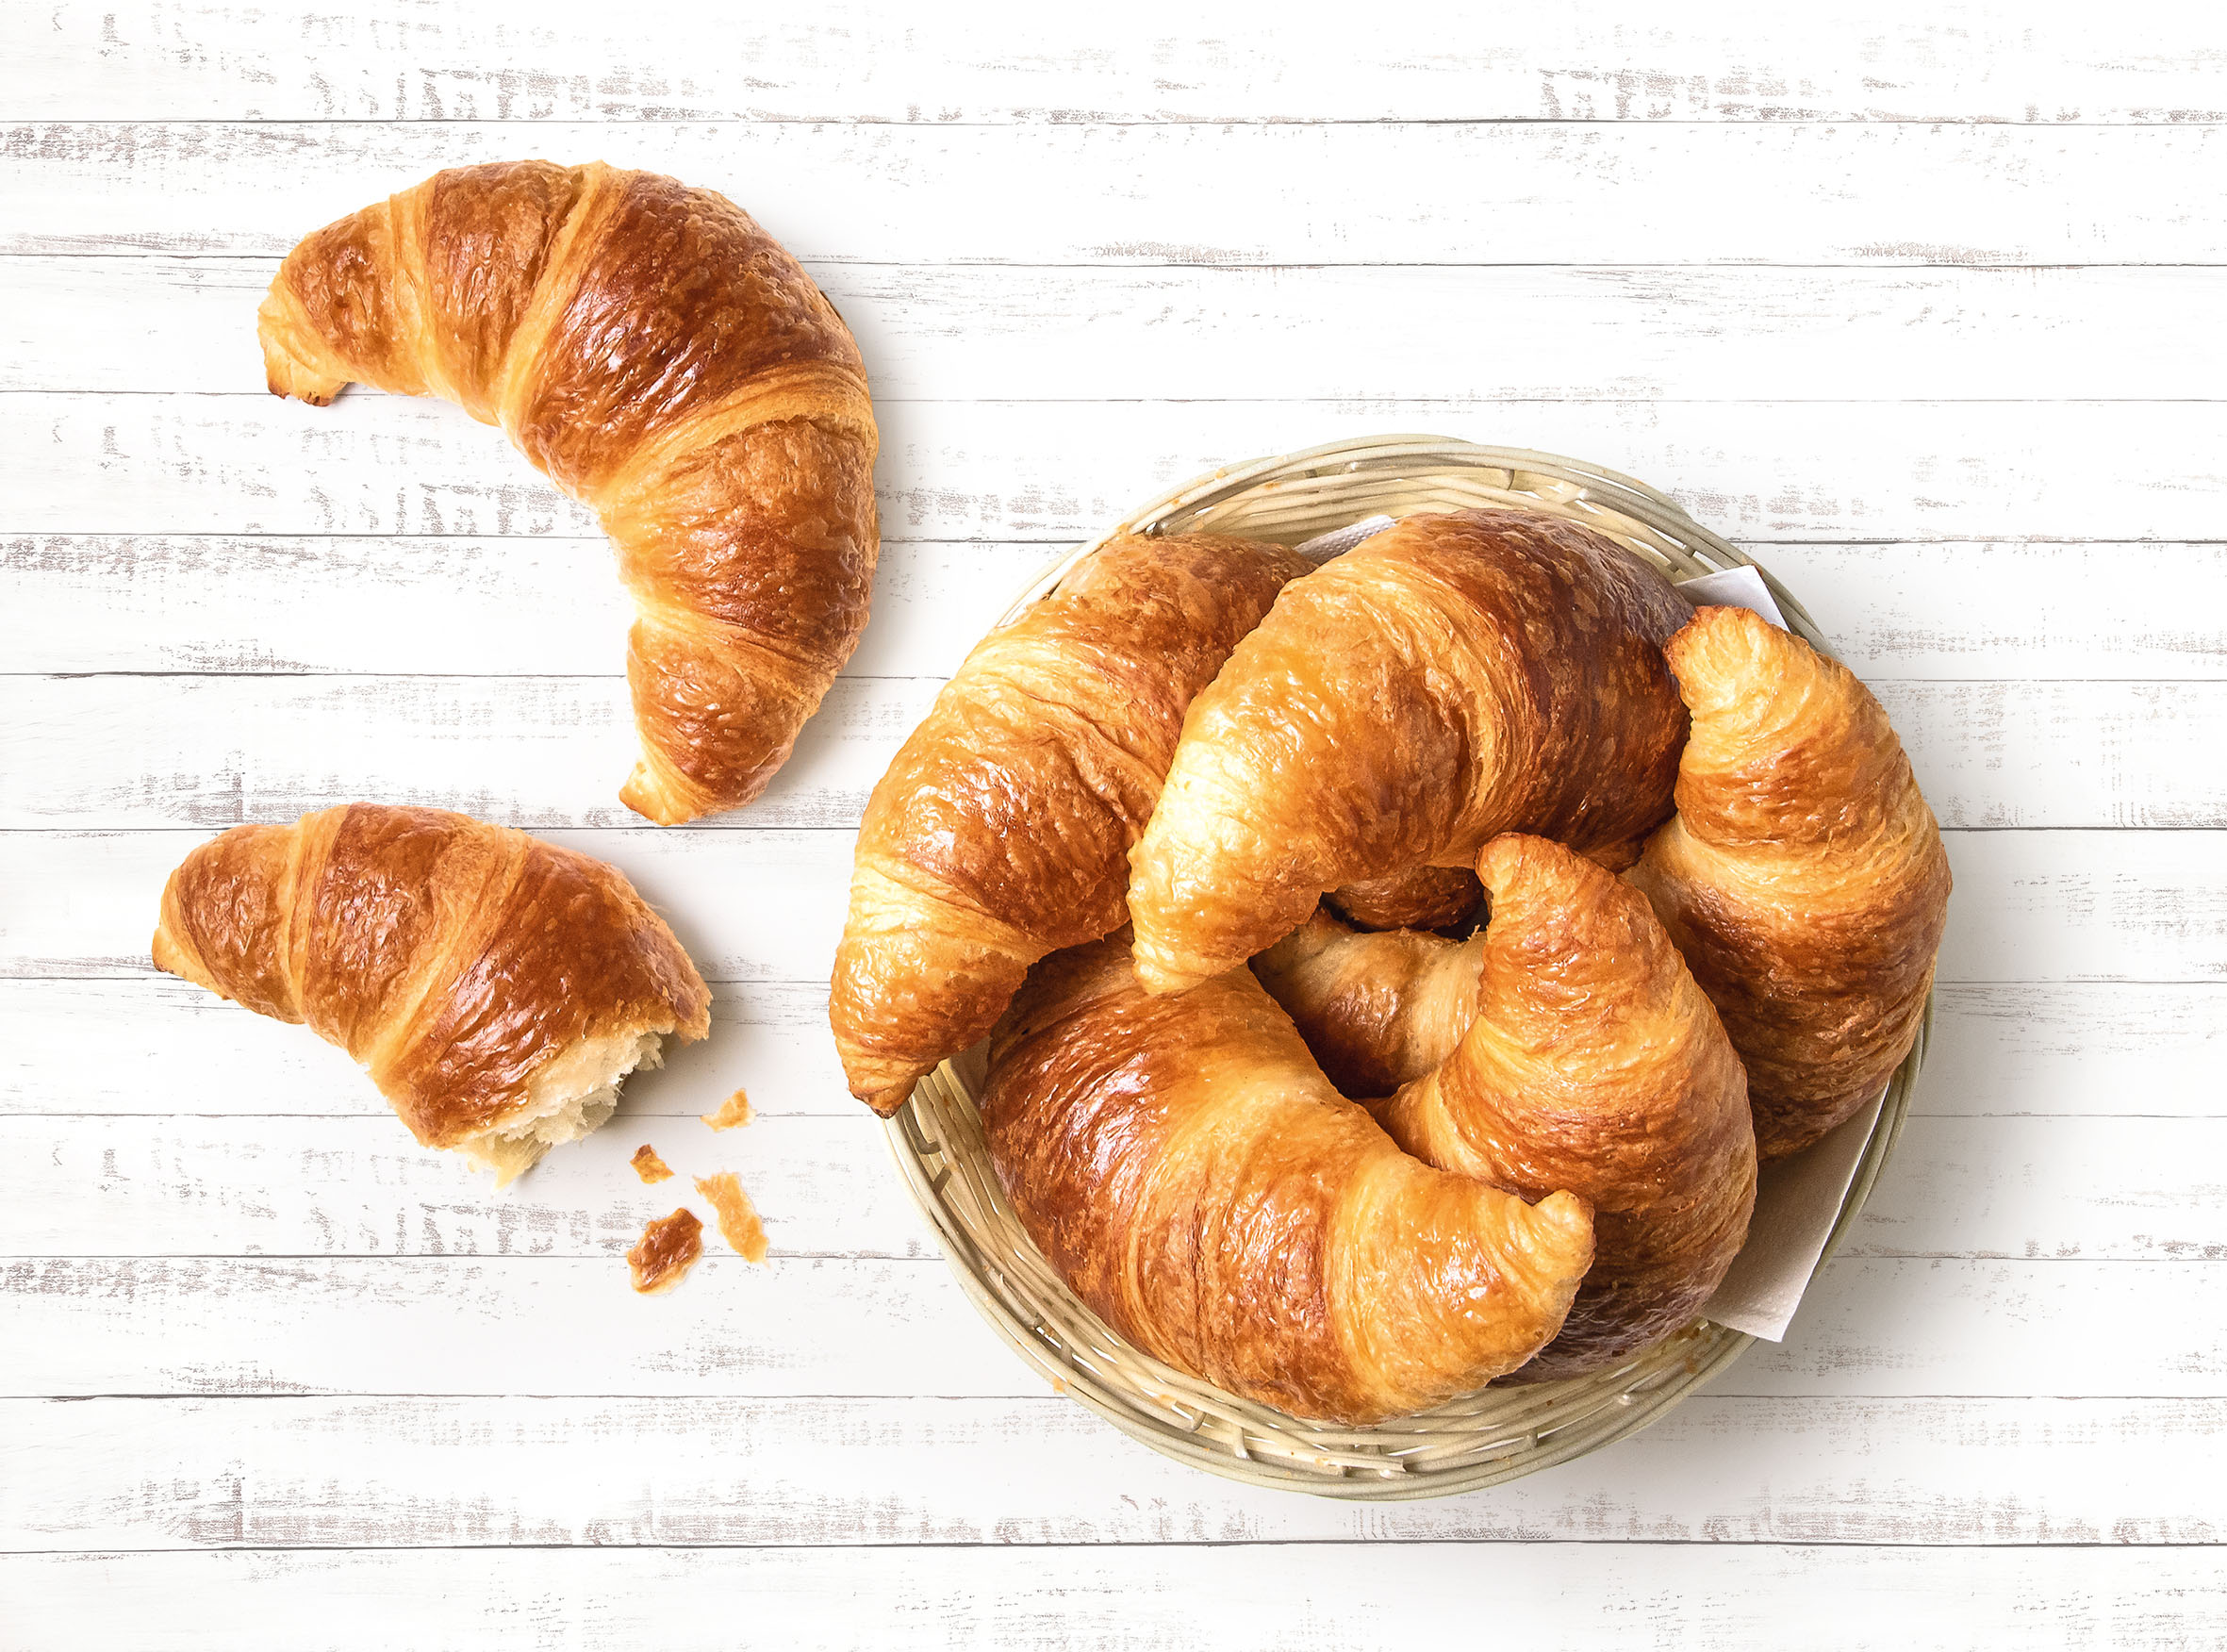 Neu aus Romer’s Hausbäckerei: Ein herzhaft buttriges French Croissant